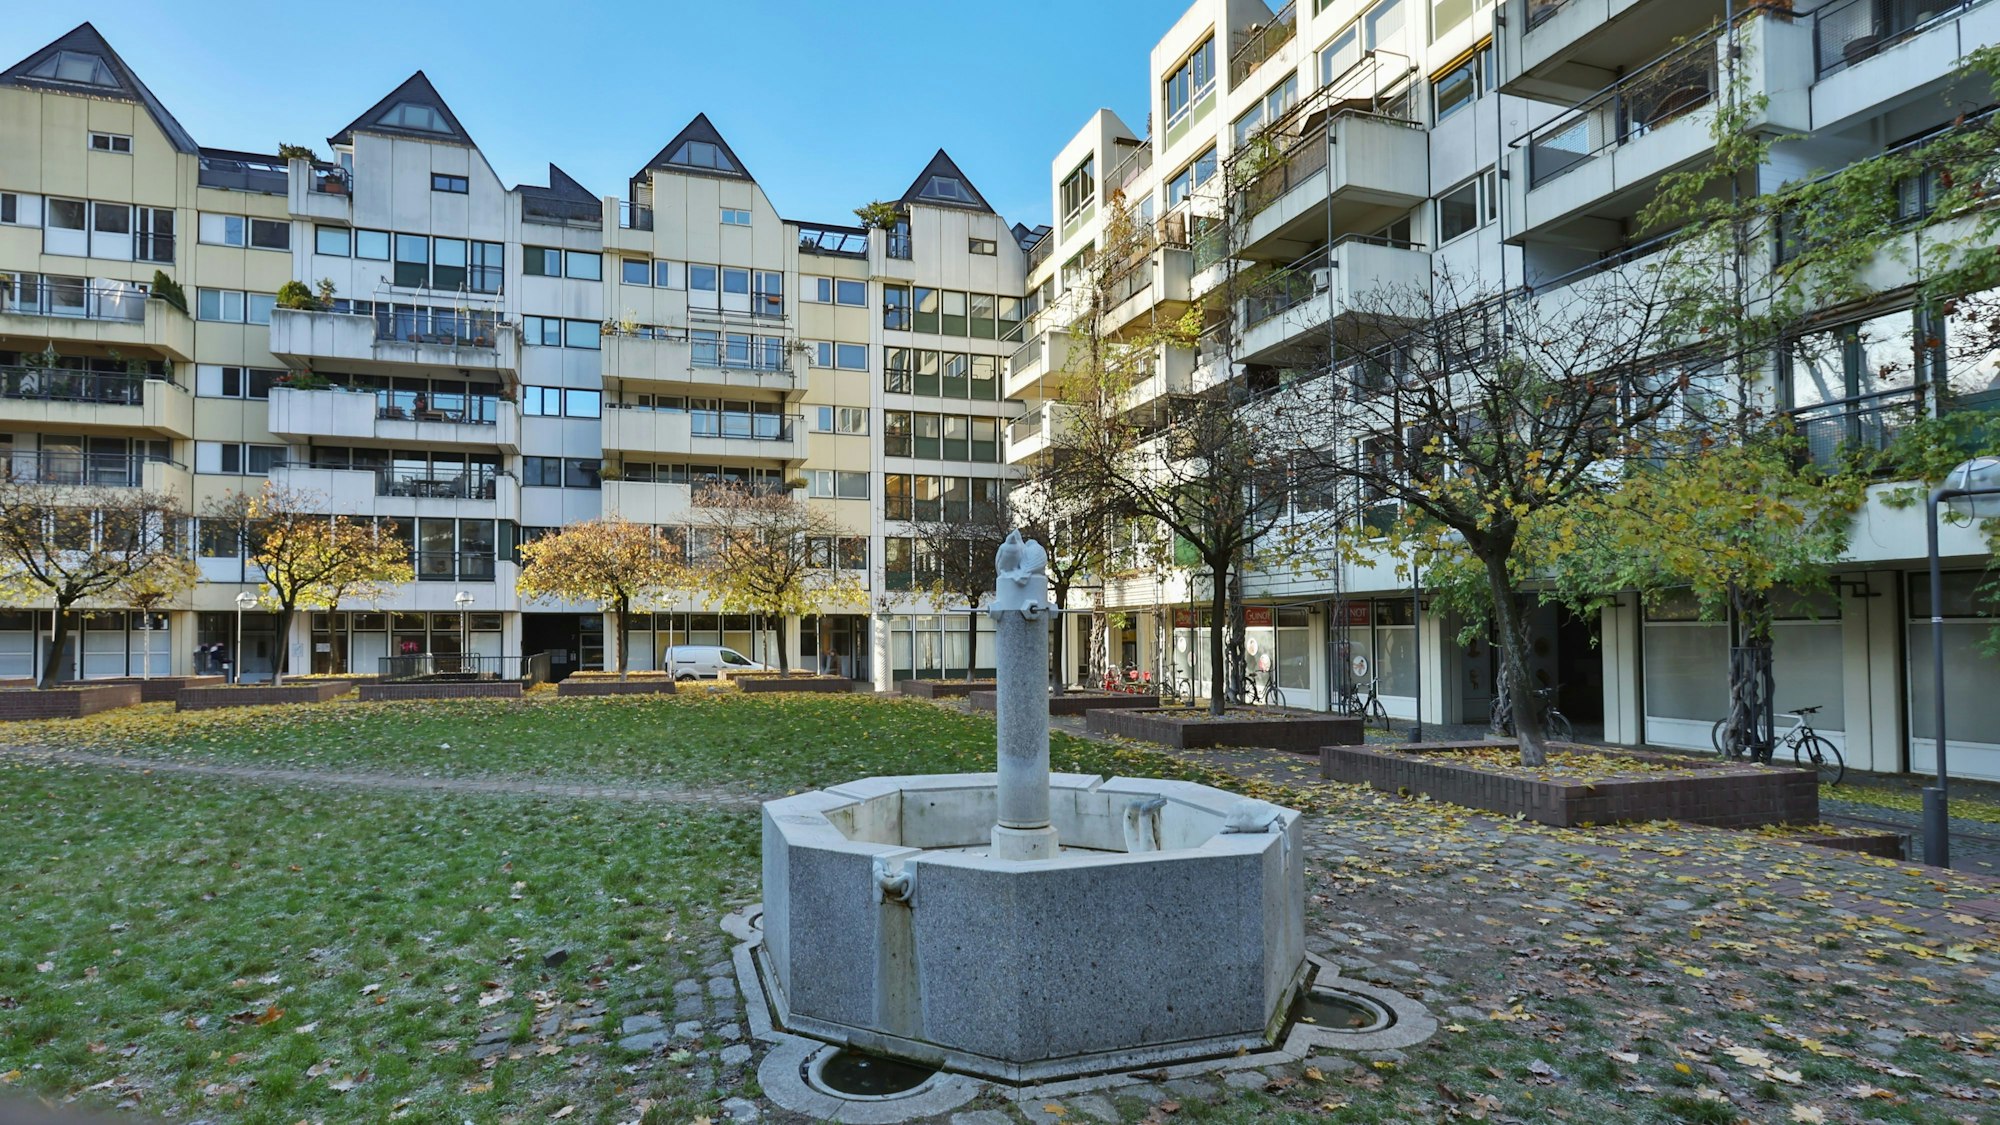 13.12.2022
Köln:
Die Wohnbebauung an Groß St. Martin (Quartier um Groß Sankt Martin) wurde in den 1970er Jahren errichtet.
Foto: Martina Goyert



